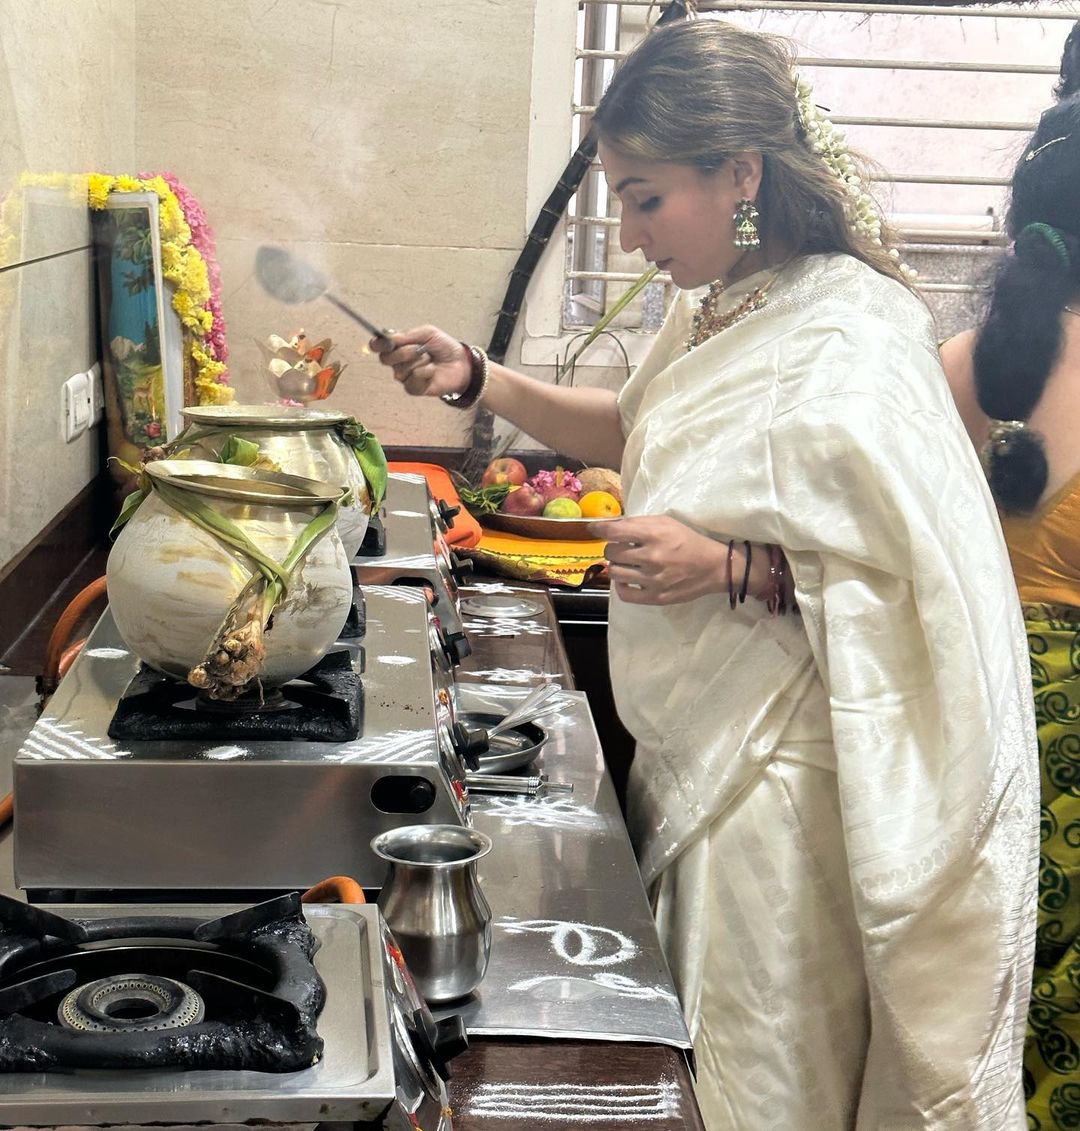 Aishwarya Rajinikanth shared Pongal Celebration photos with family